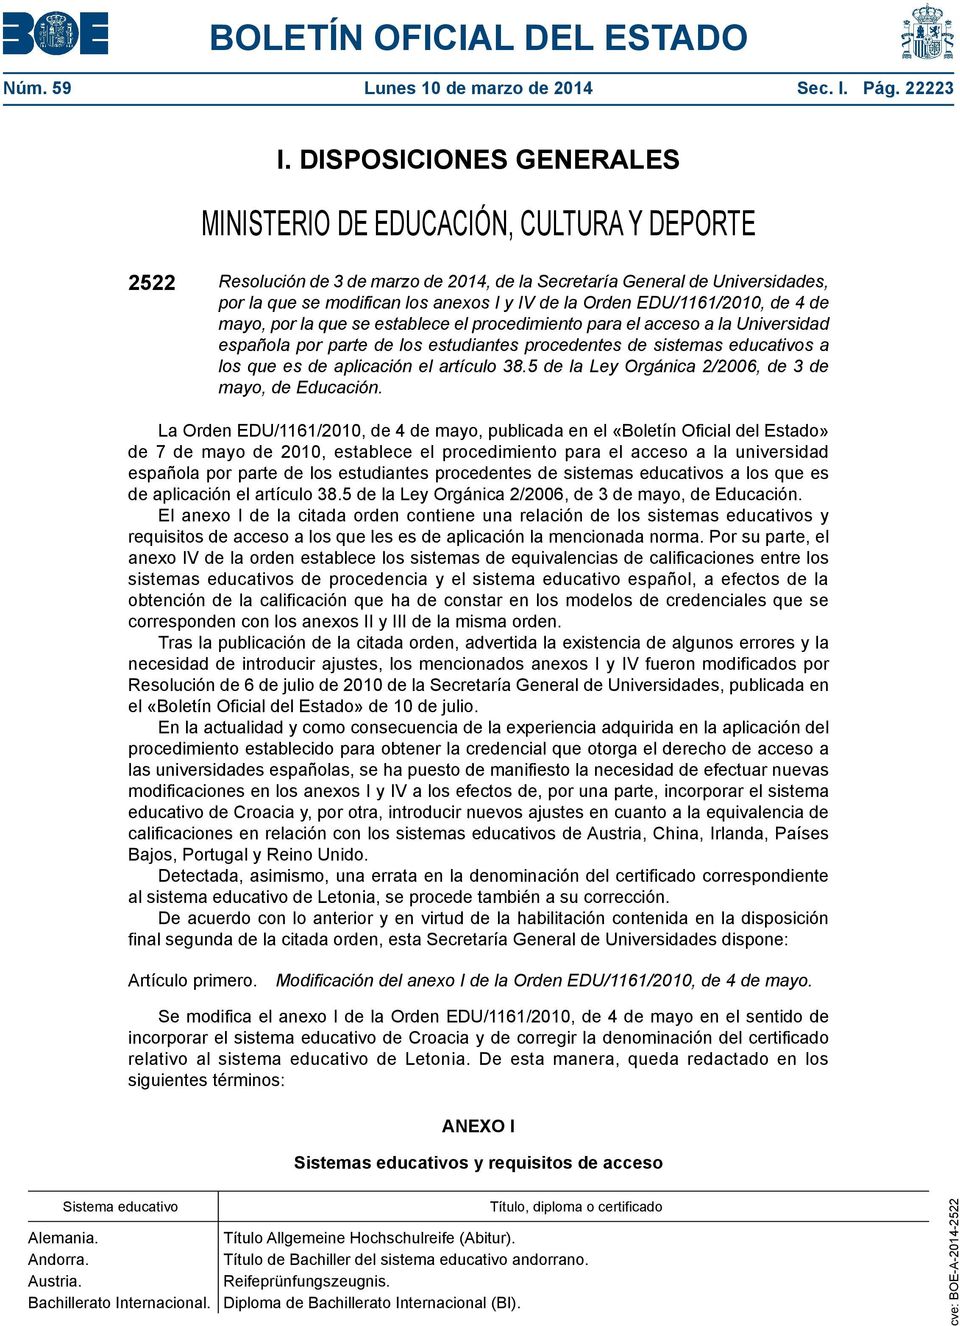 Orden EDU/1161/2010, de 4 de mayo, por la que se establece el procedimiento para el acceso a la Universidad española por parte de los estudiantes procedentes de sistemas educativos a los que es de